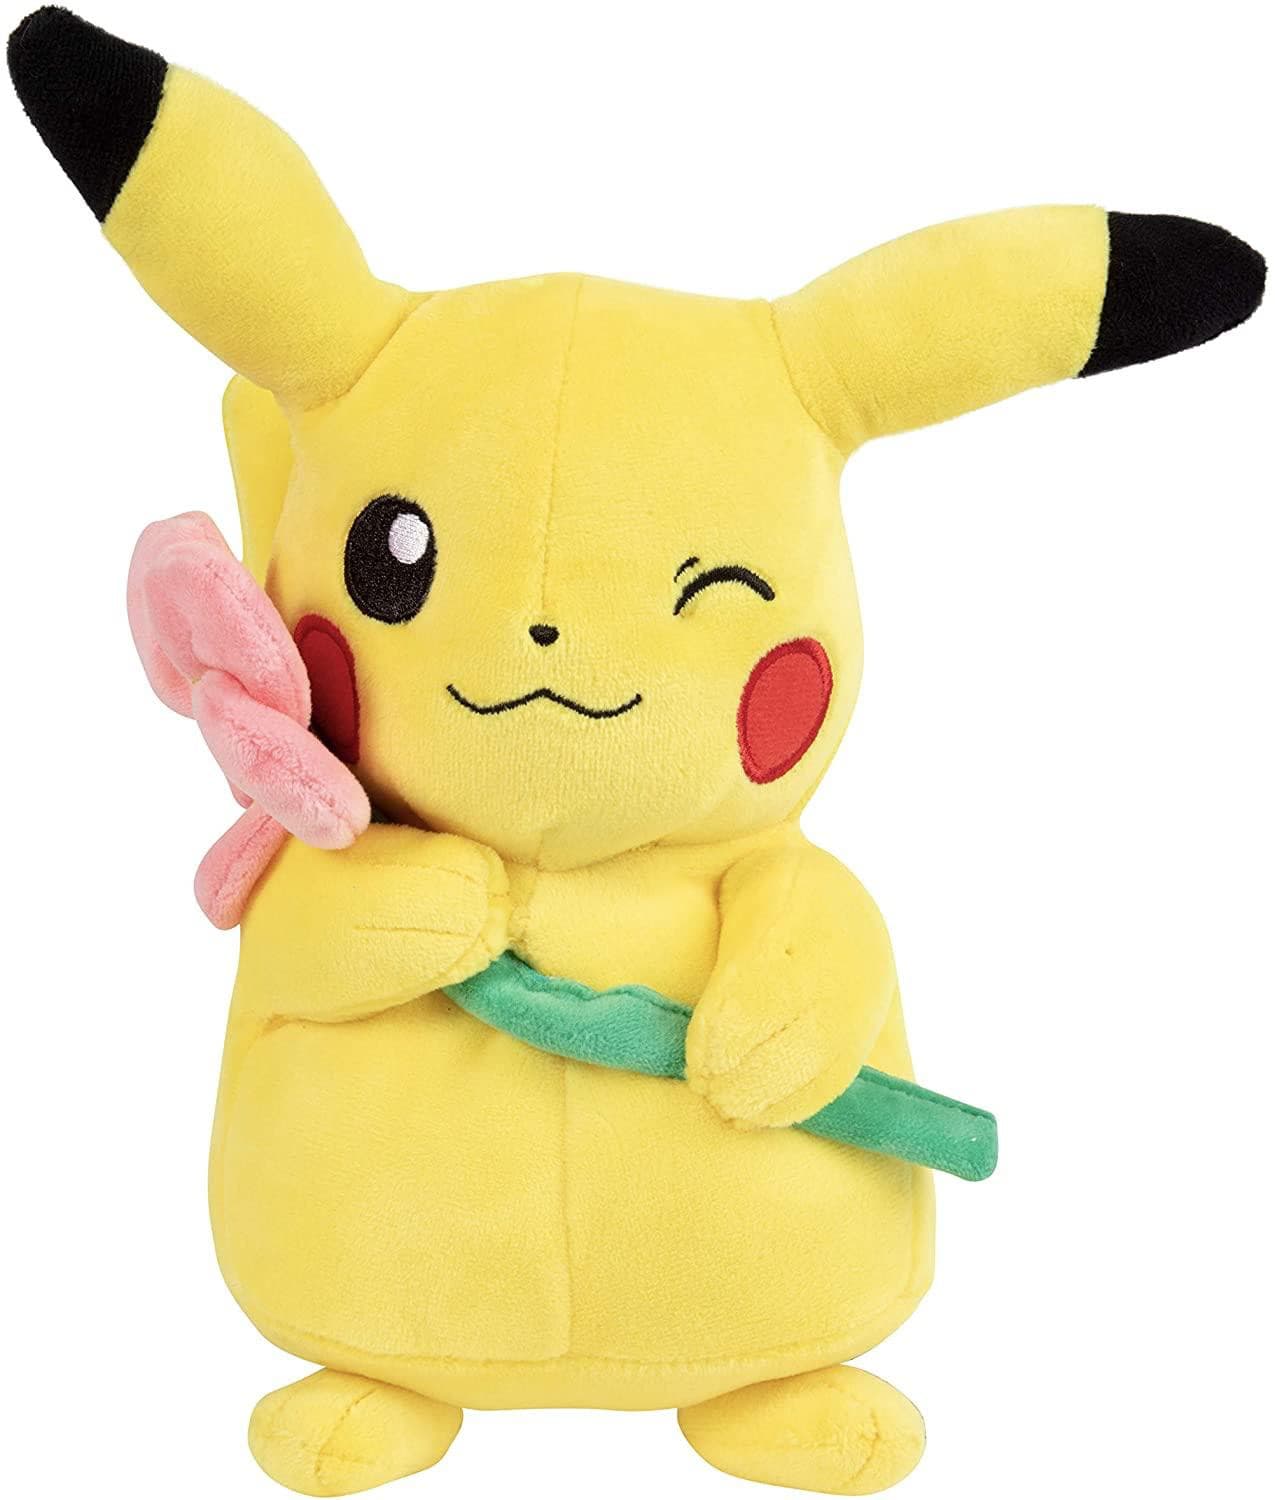 Gaan wandelen compact plan Pikachu Pluche knuffel met Bloem 25 cm Pokémon | pokemonwinkel